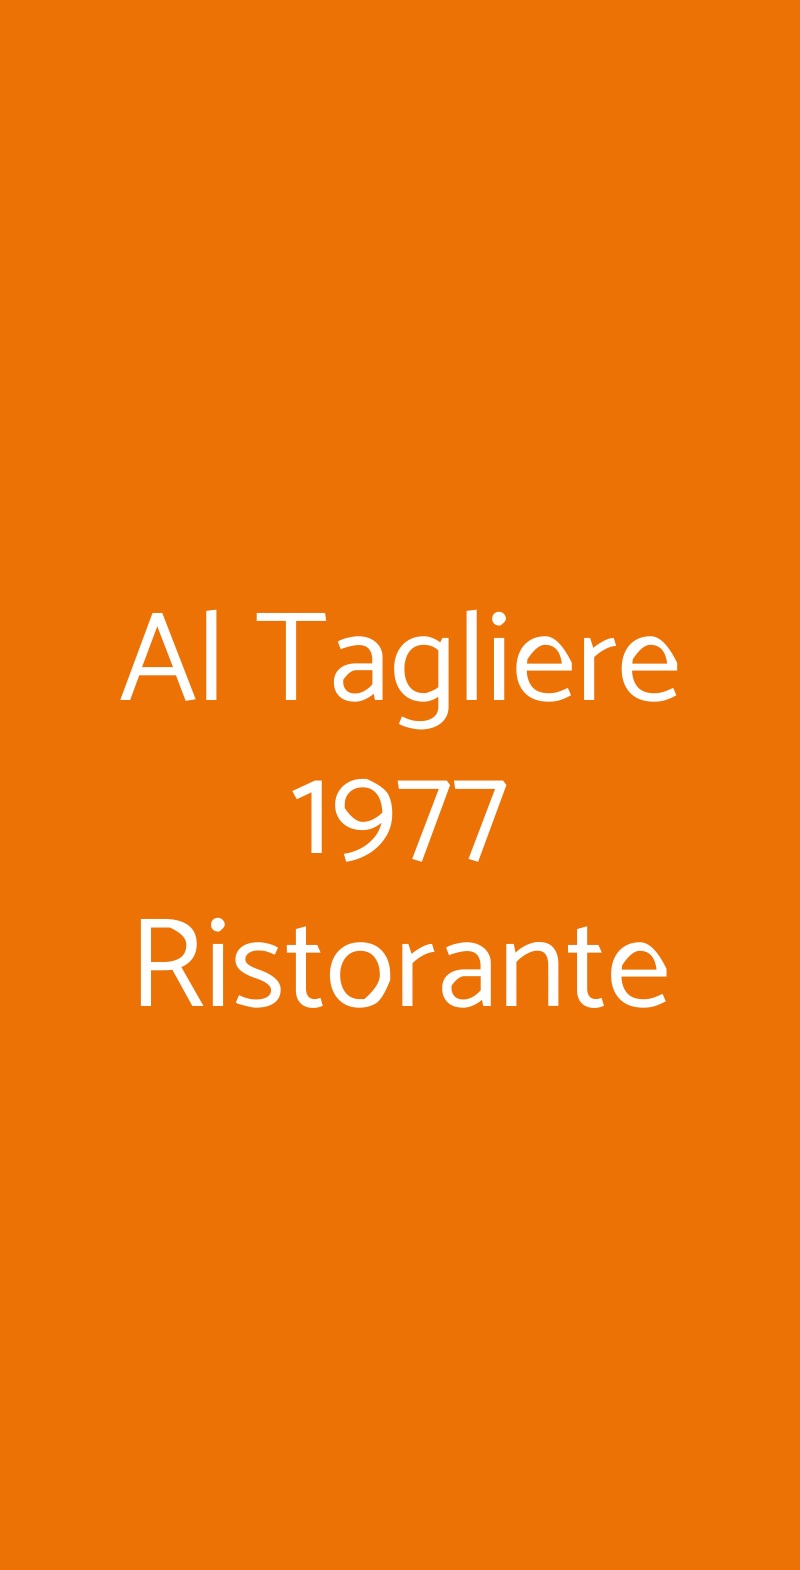 Al Tagliere 1977 Ristorante Loria menù 1 pagina